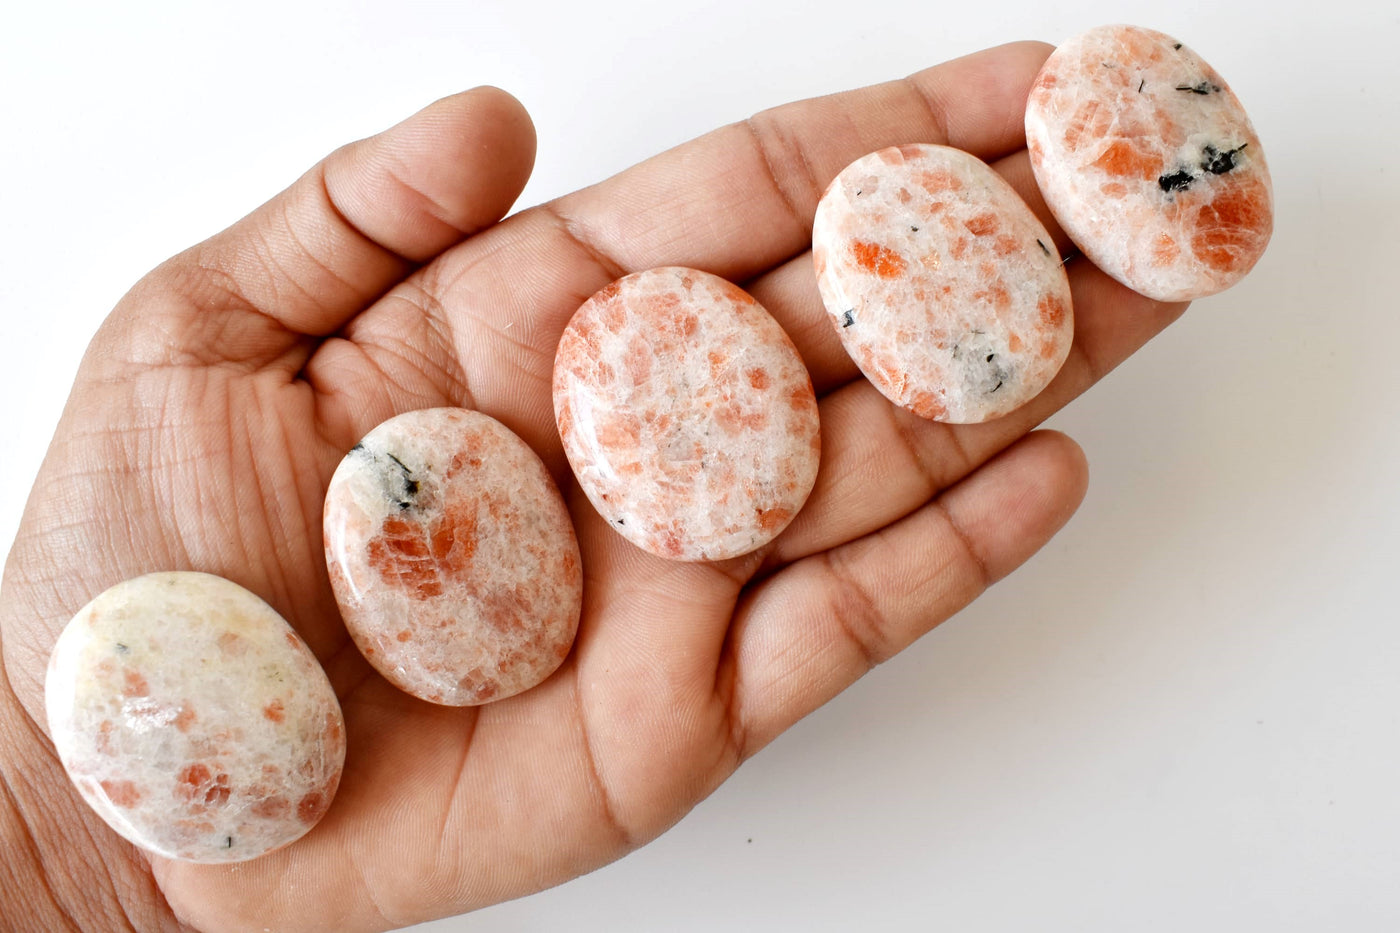 Sunstone Worry Stone pour la guérison des cristaux (Pocket Palm Stone / Thumb Stone)